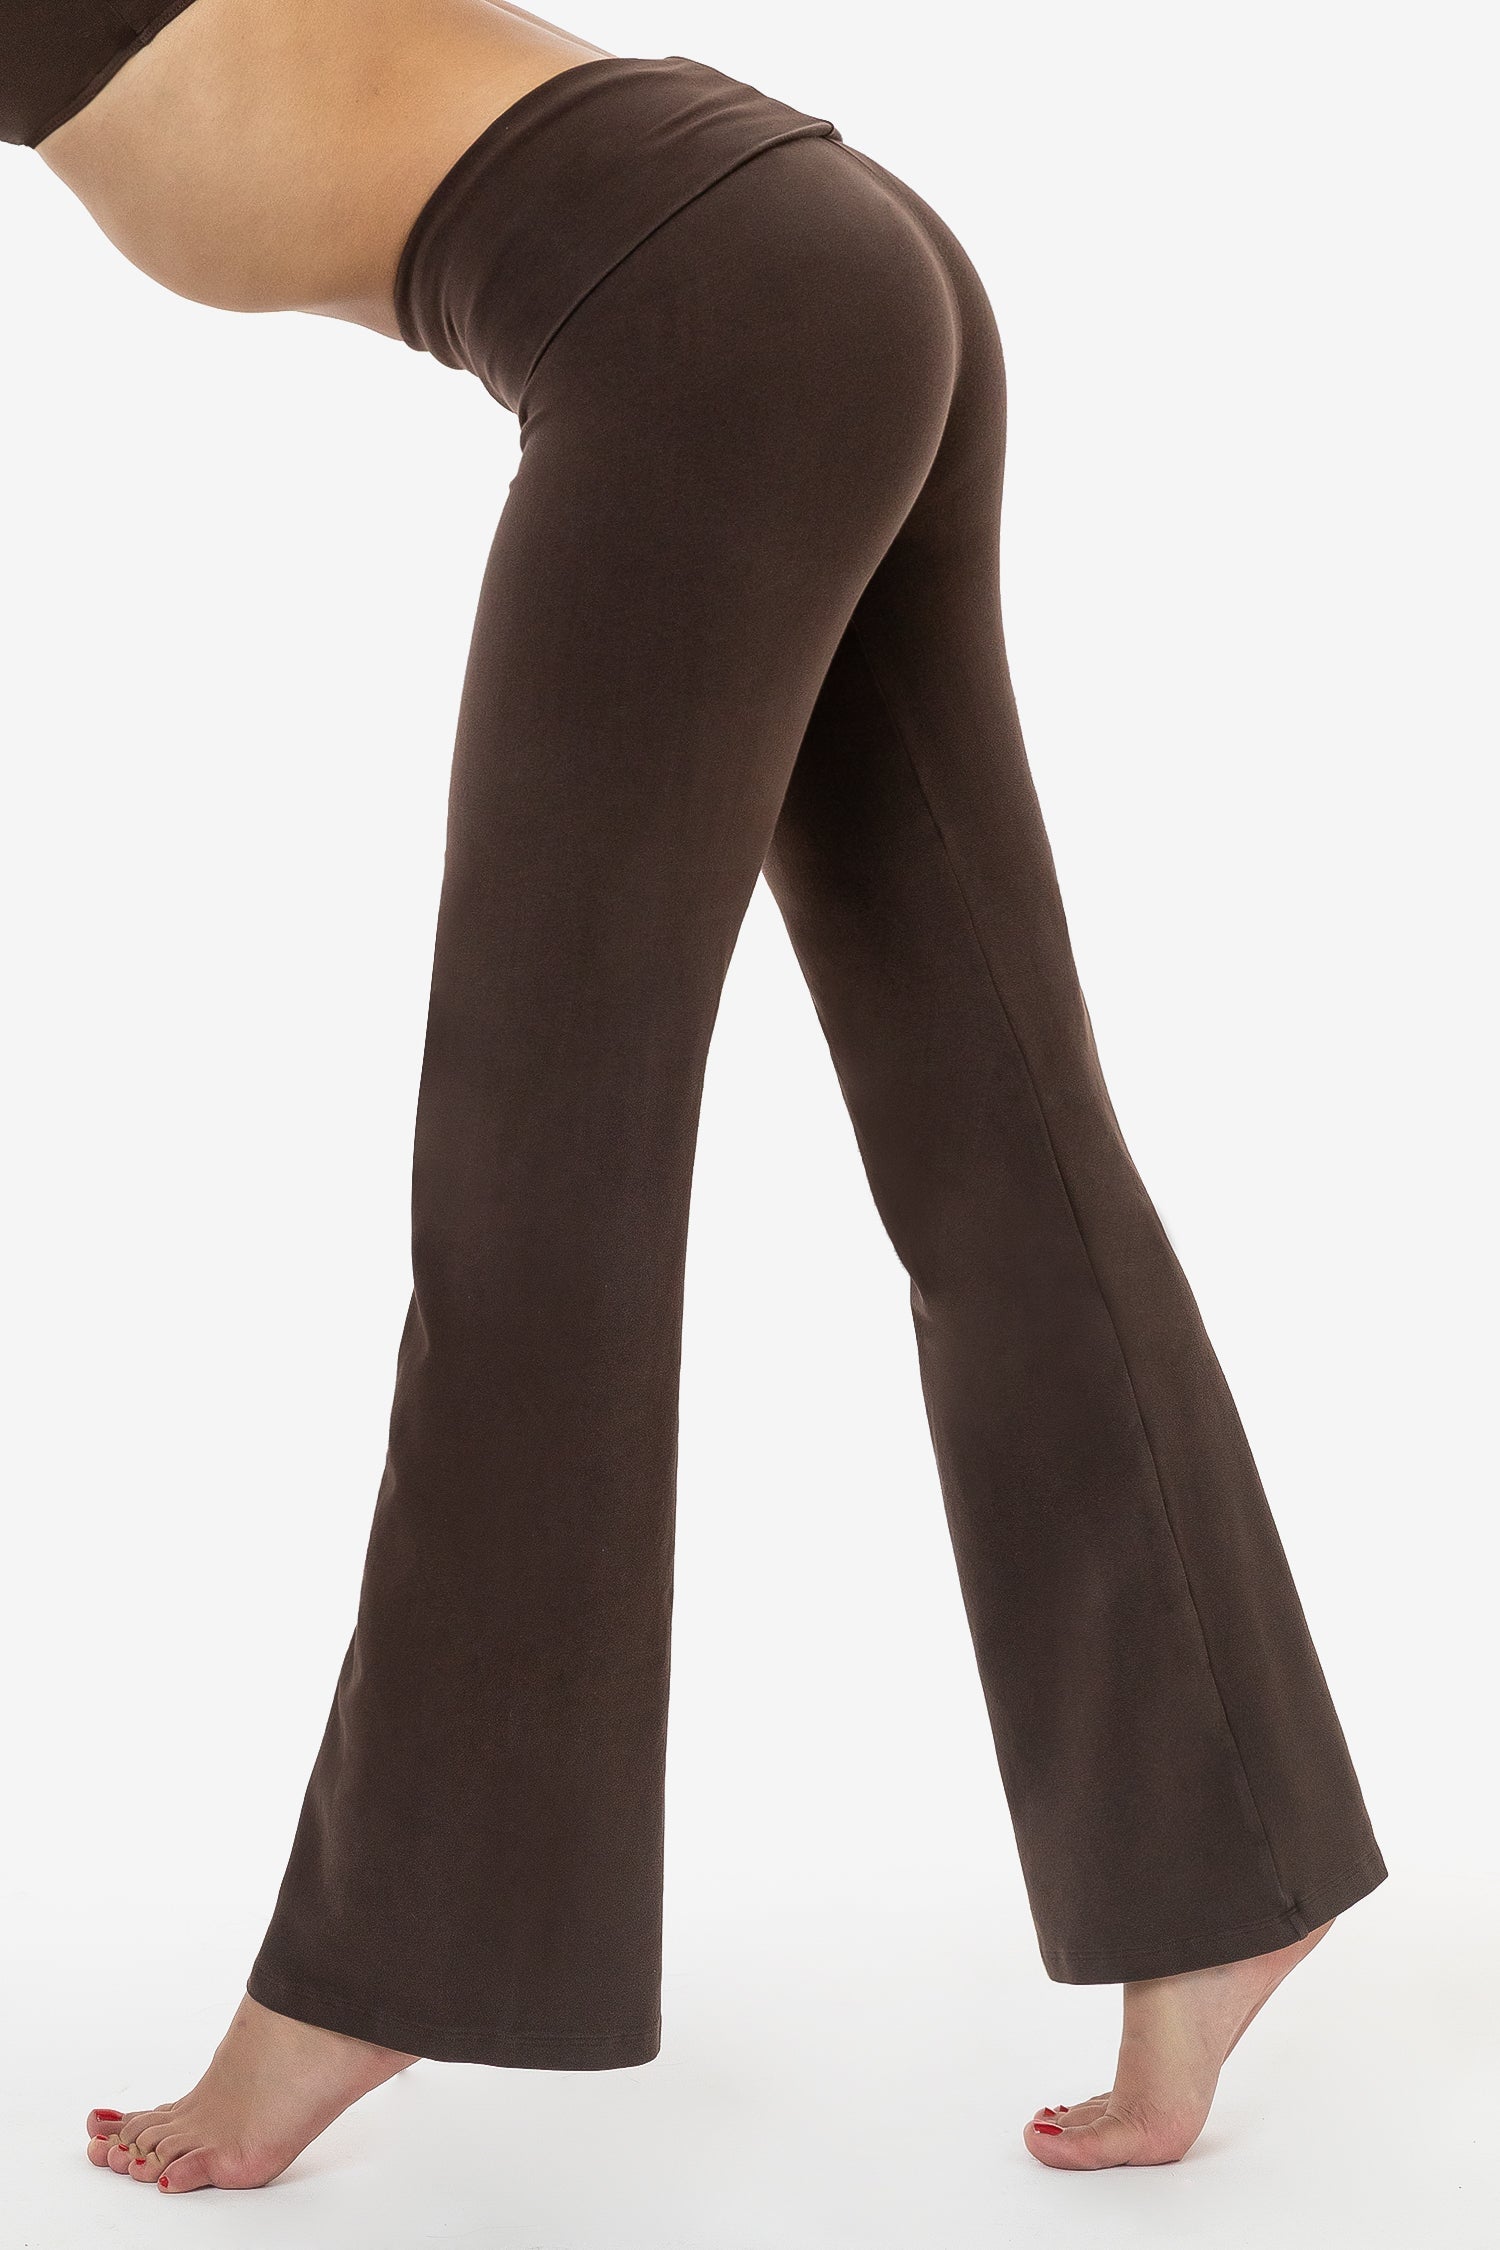 Gubotare Yoga Pants For Women Women's High Rise Tie Dye Leggings  Full-Length Yoga Pants,D S 